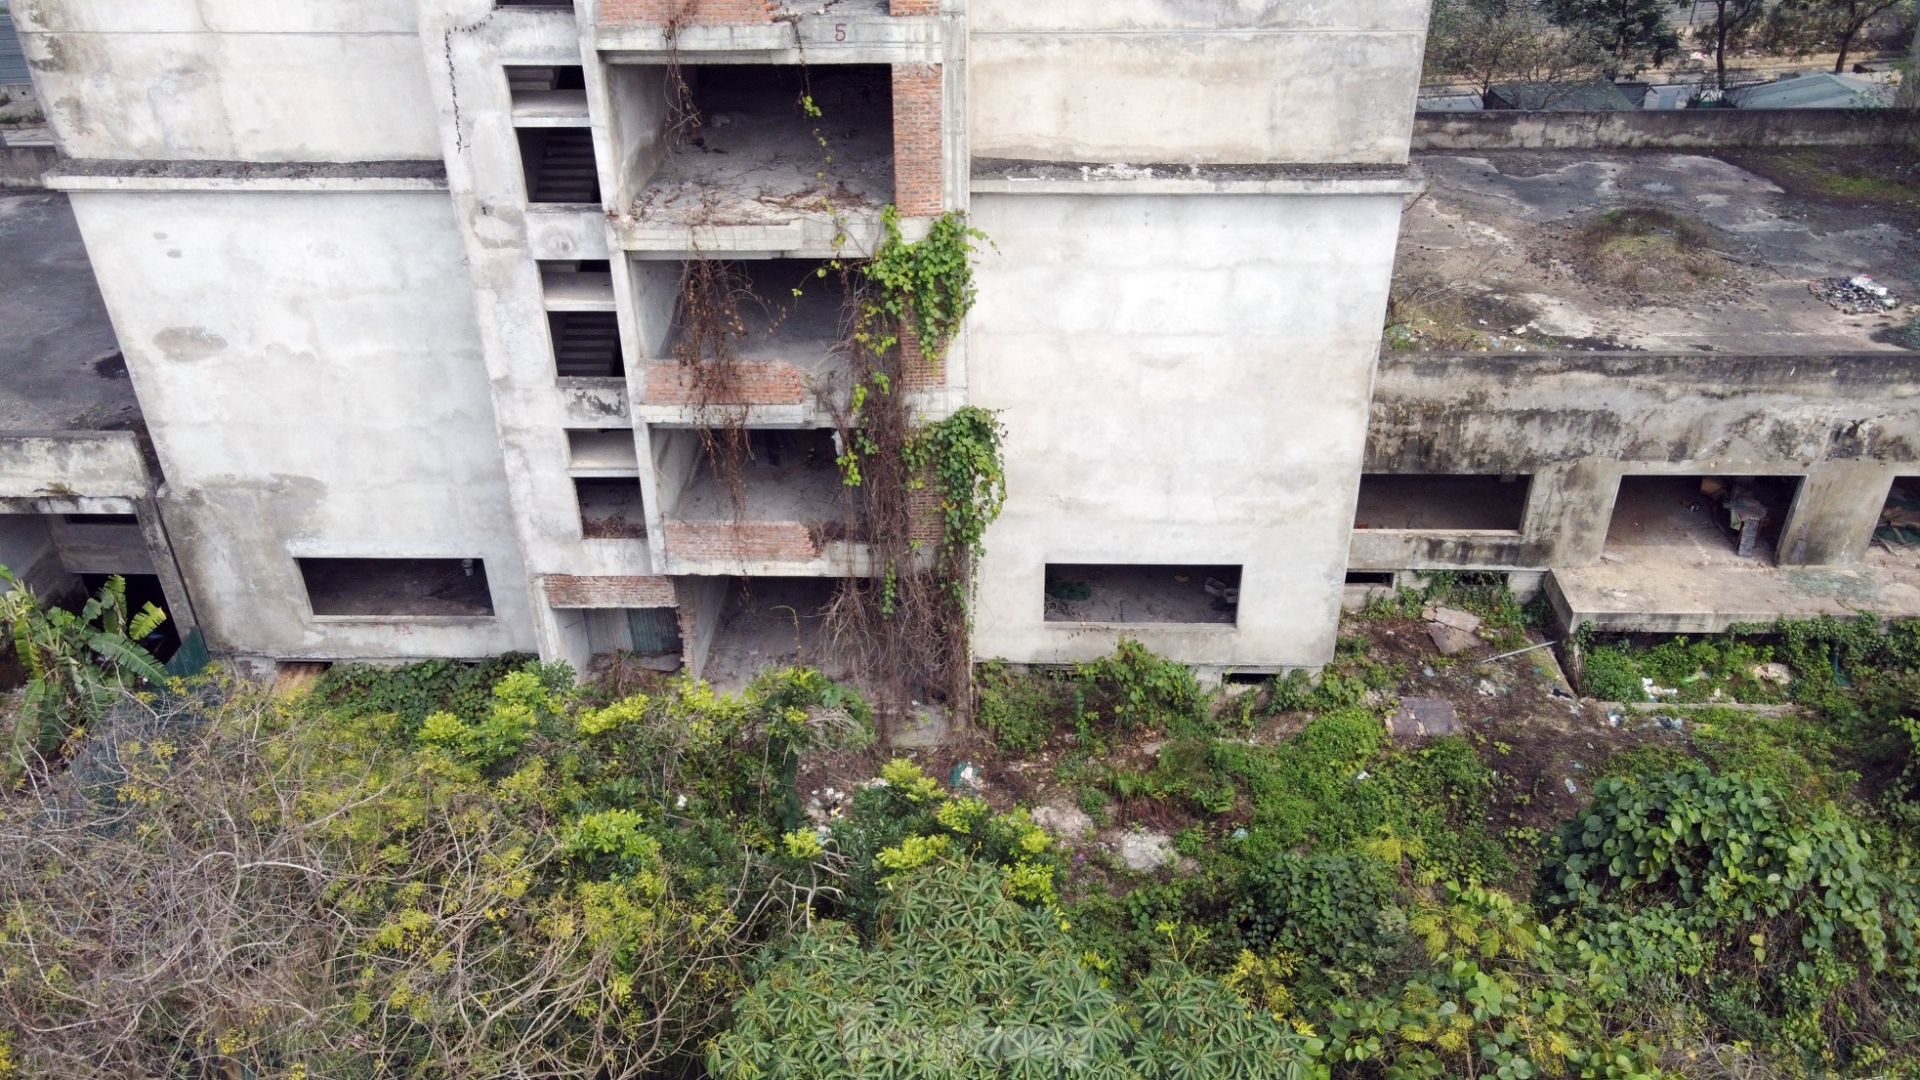 Khu ký túc xá 'nghìn tỷ' bỏ hoang sắp chuyển đổi làm nhà ở xã hội ở Hà Nội